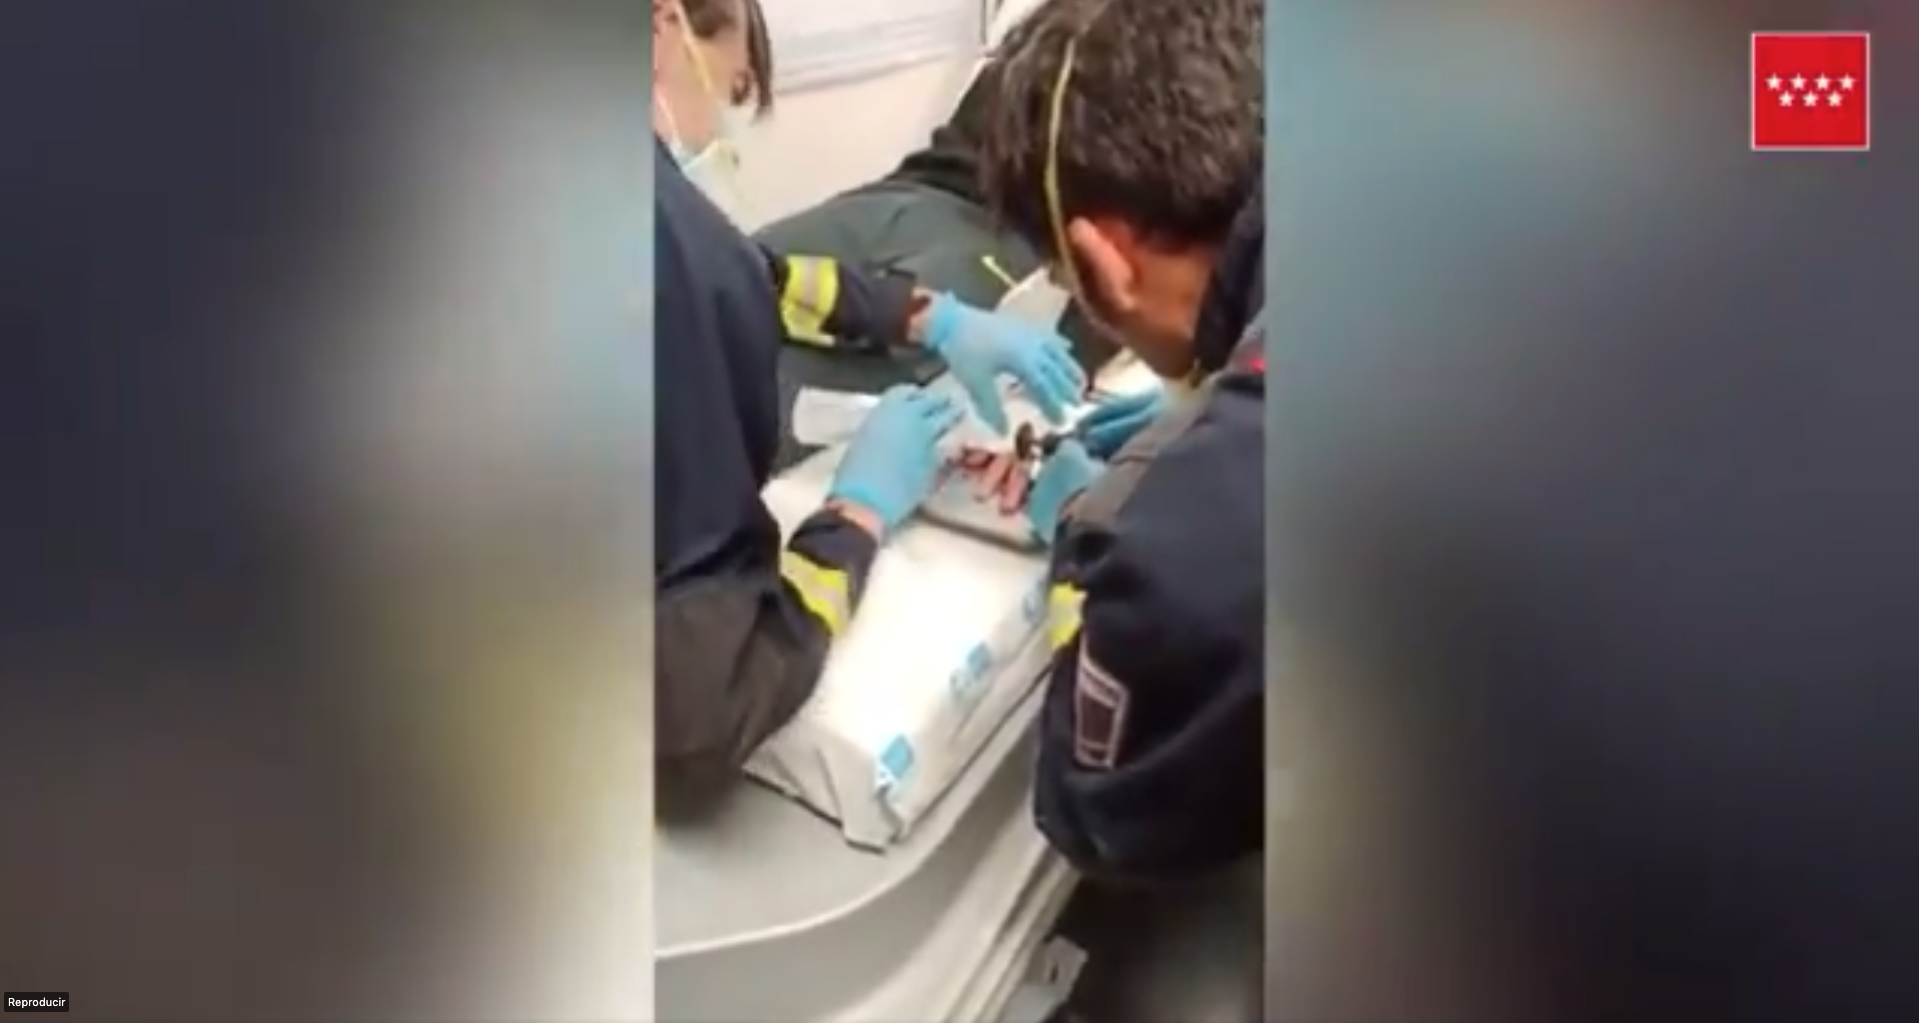 VÏDEO: Los bomberos consiguen quitar un anillo atascado en el dedo de un joven